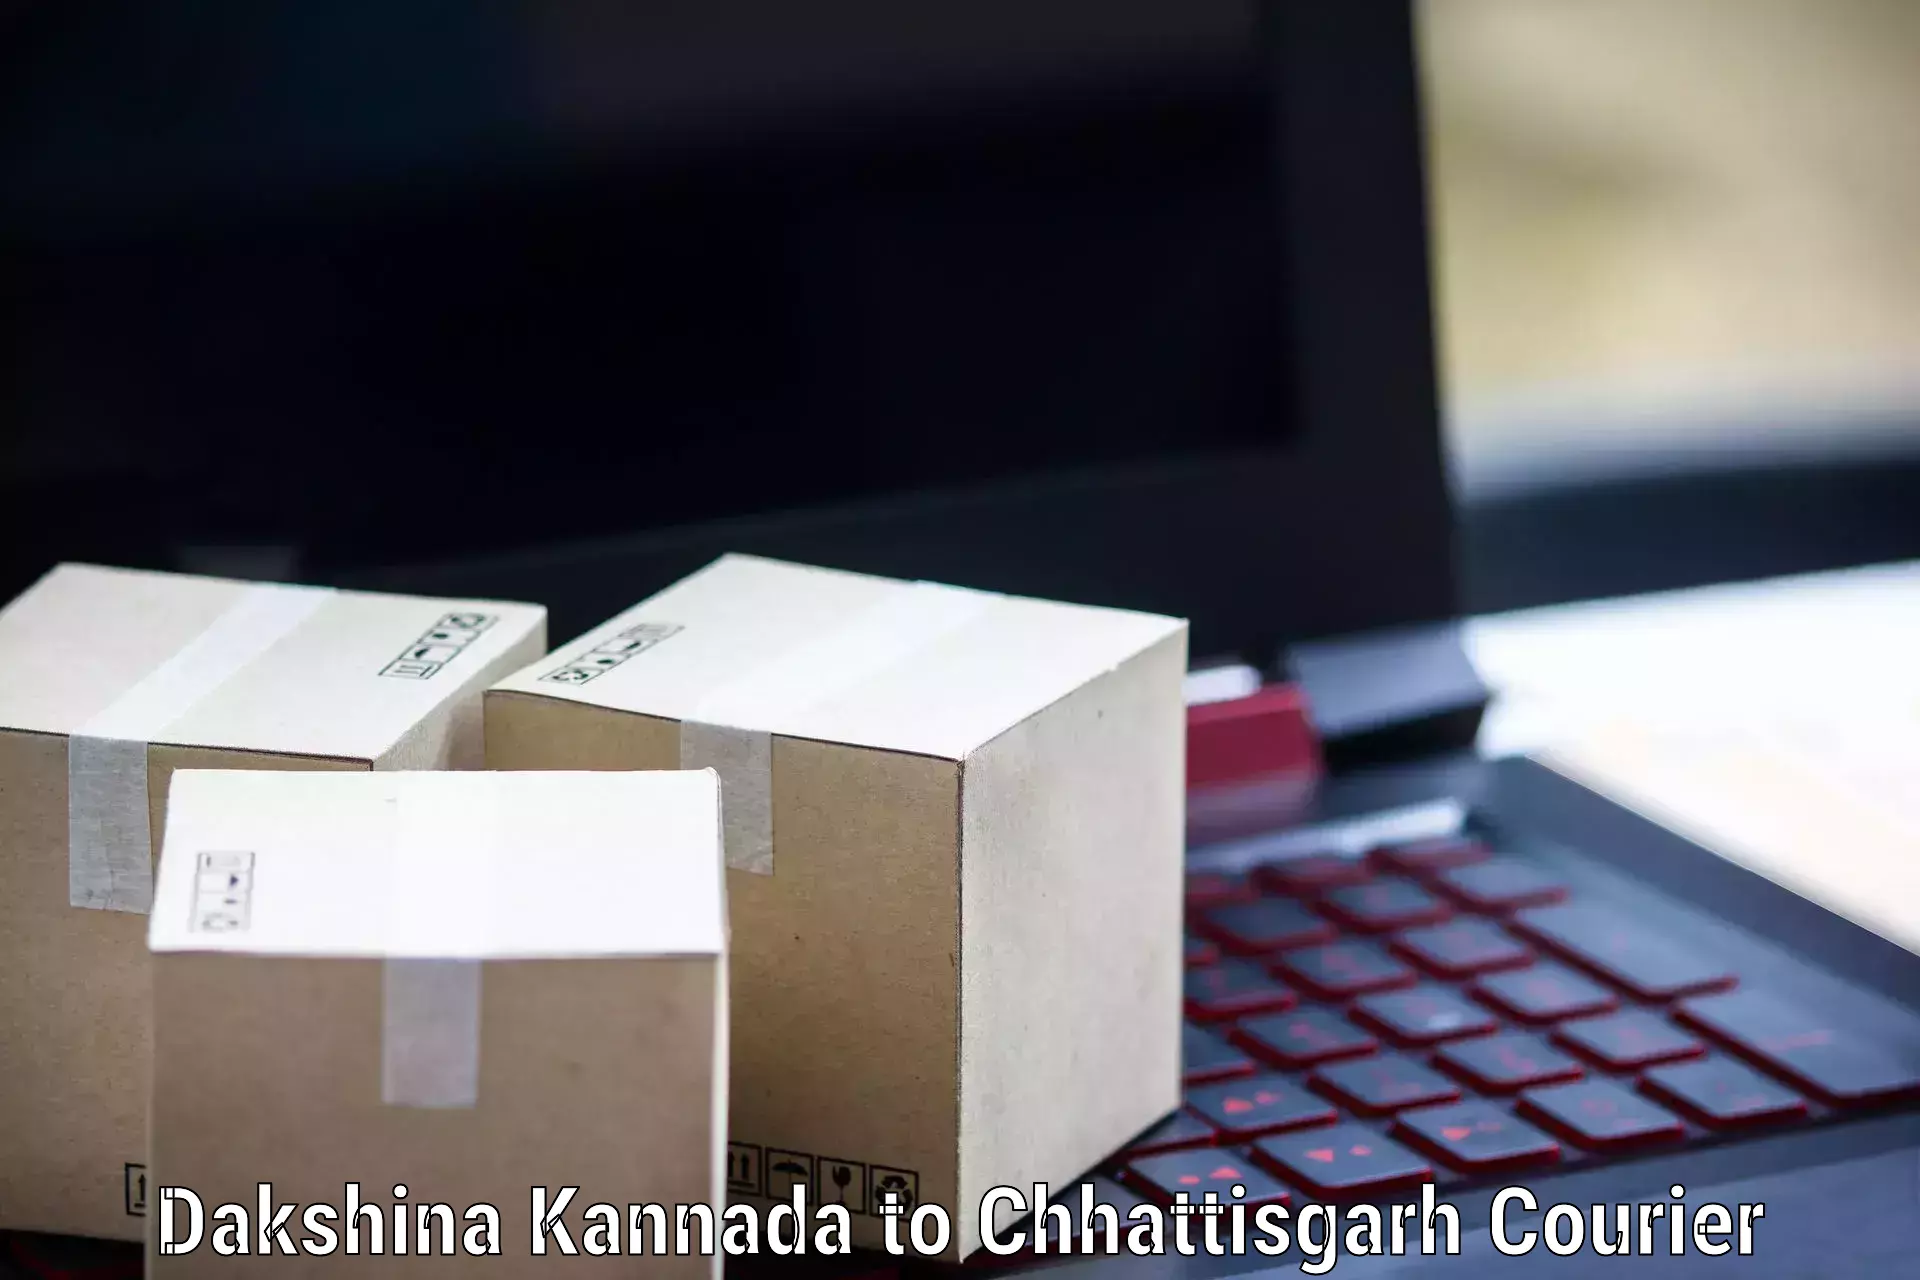 Individual parcel service Dakshina Kannada to Jagdalpur